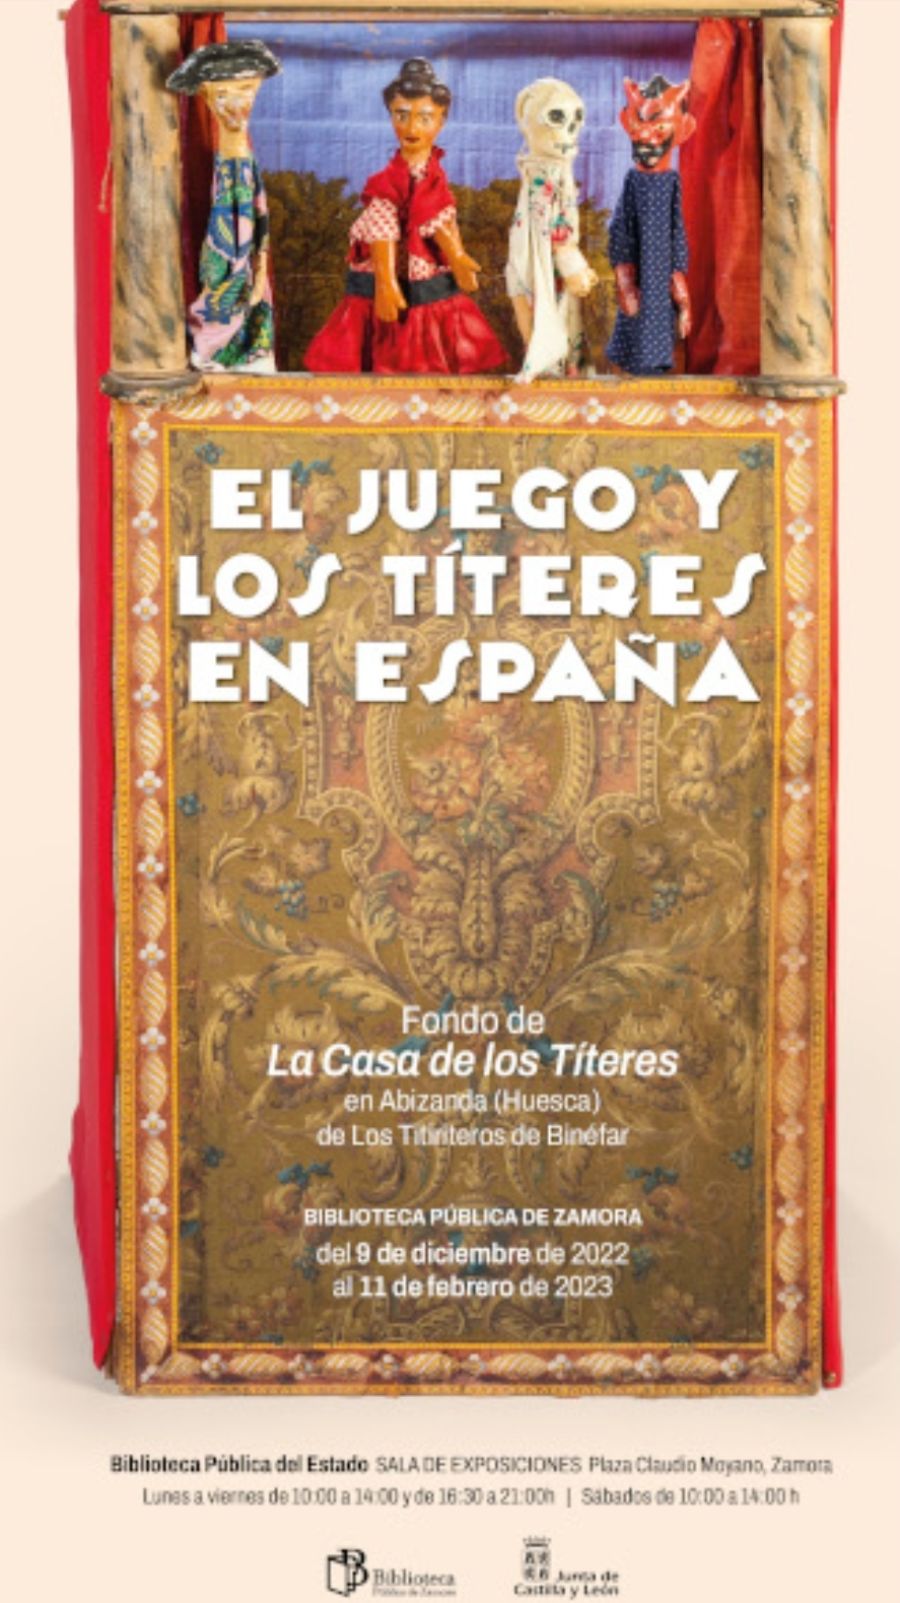 El juego y los títeres en España. Fondo de La Casa de los Títeres en Abizanda (Huesca) de Los Titiriteros de Binéfar